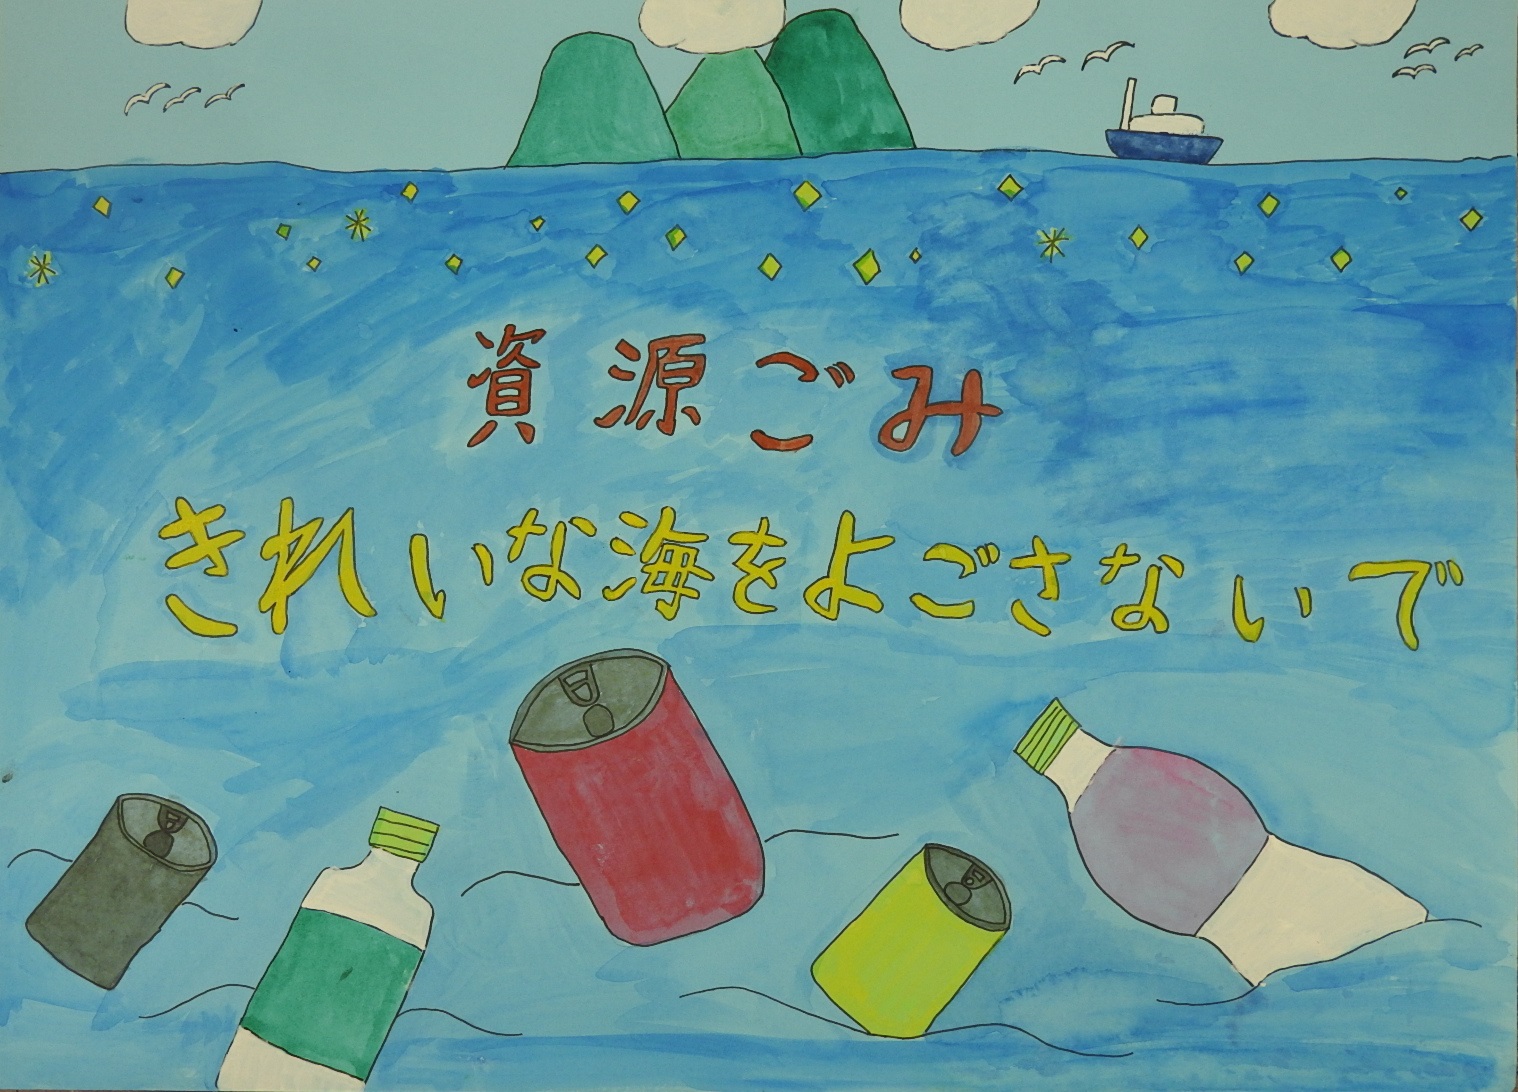 「資源ごみきれいな海をよごさないで」と書かれた、海の上に缶やペットボトルが浮いている絵が描かれたポスター